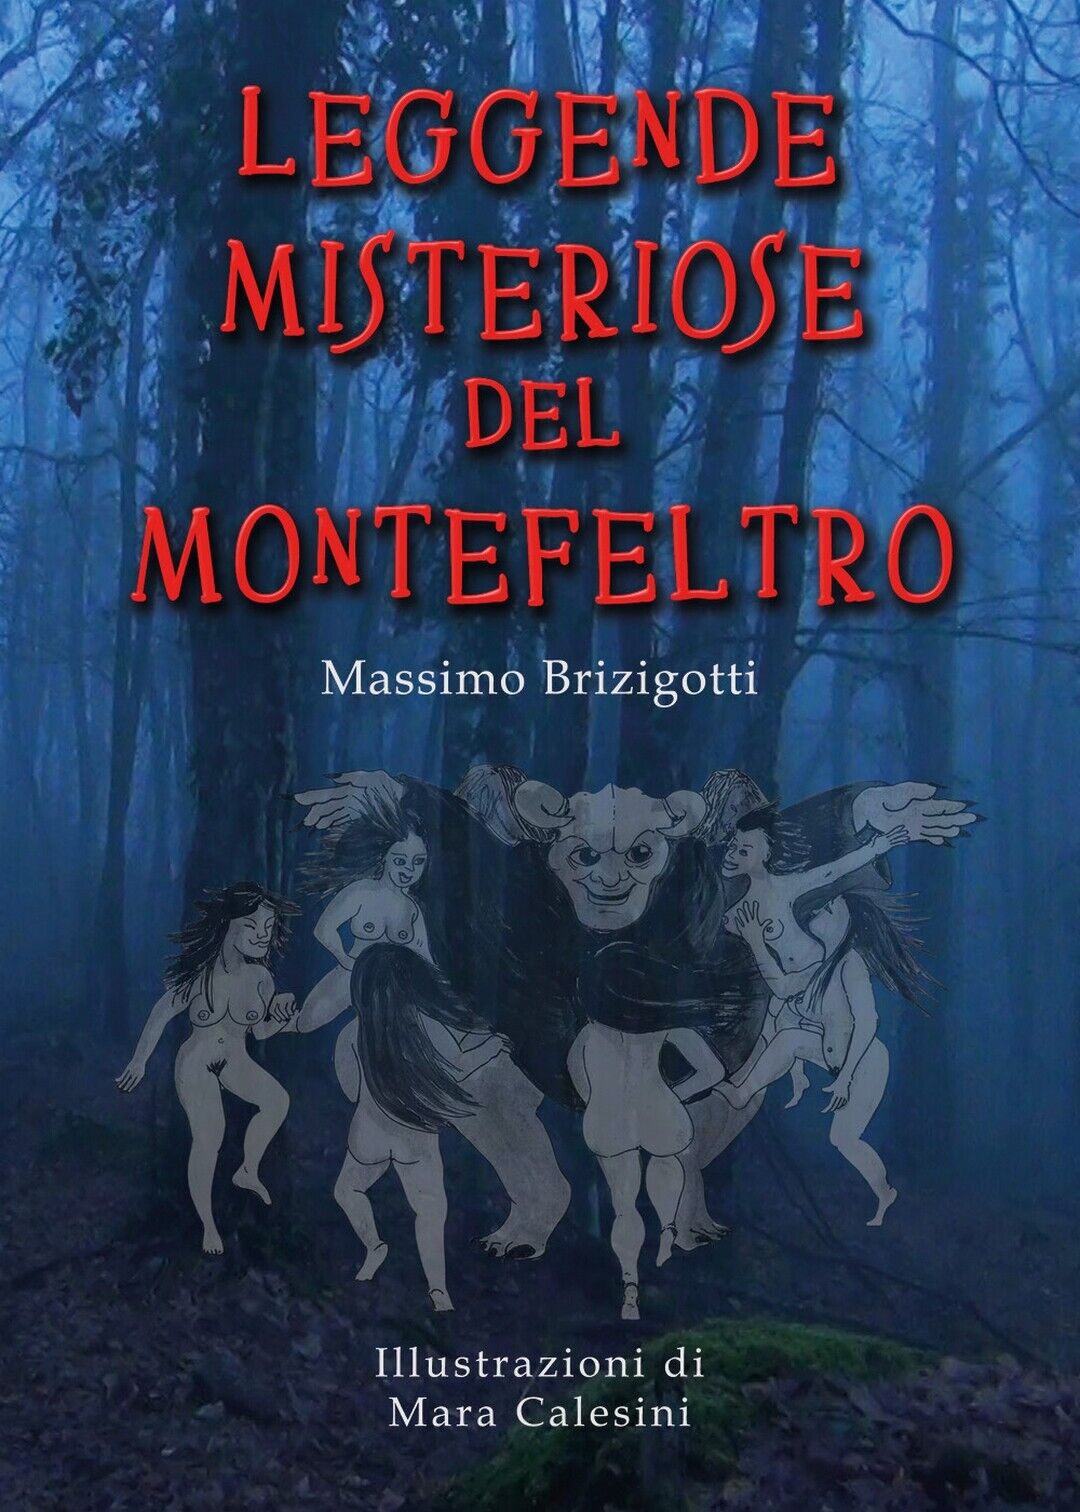 Leggende Misteriose del Montefeltro  di Massimo Brizigotti, M. Calesini,  2019